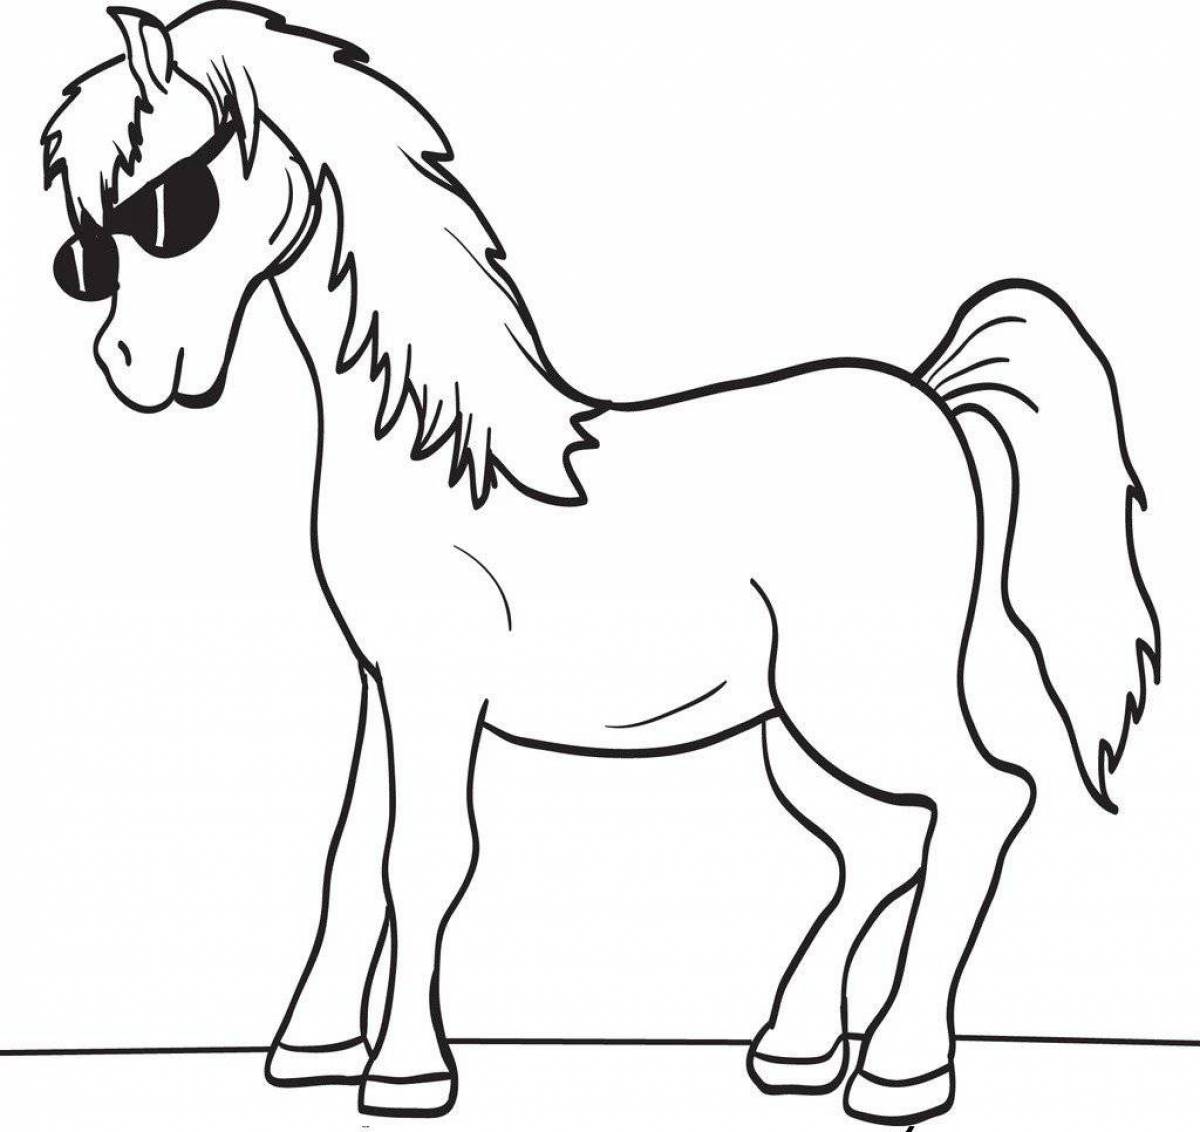 Раскрасить лошадку. Раскраска. Лошадка. Лошадь для раскрашивания. Лошадь раскраска для детей. Лошадь раскраска для малышей.